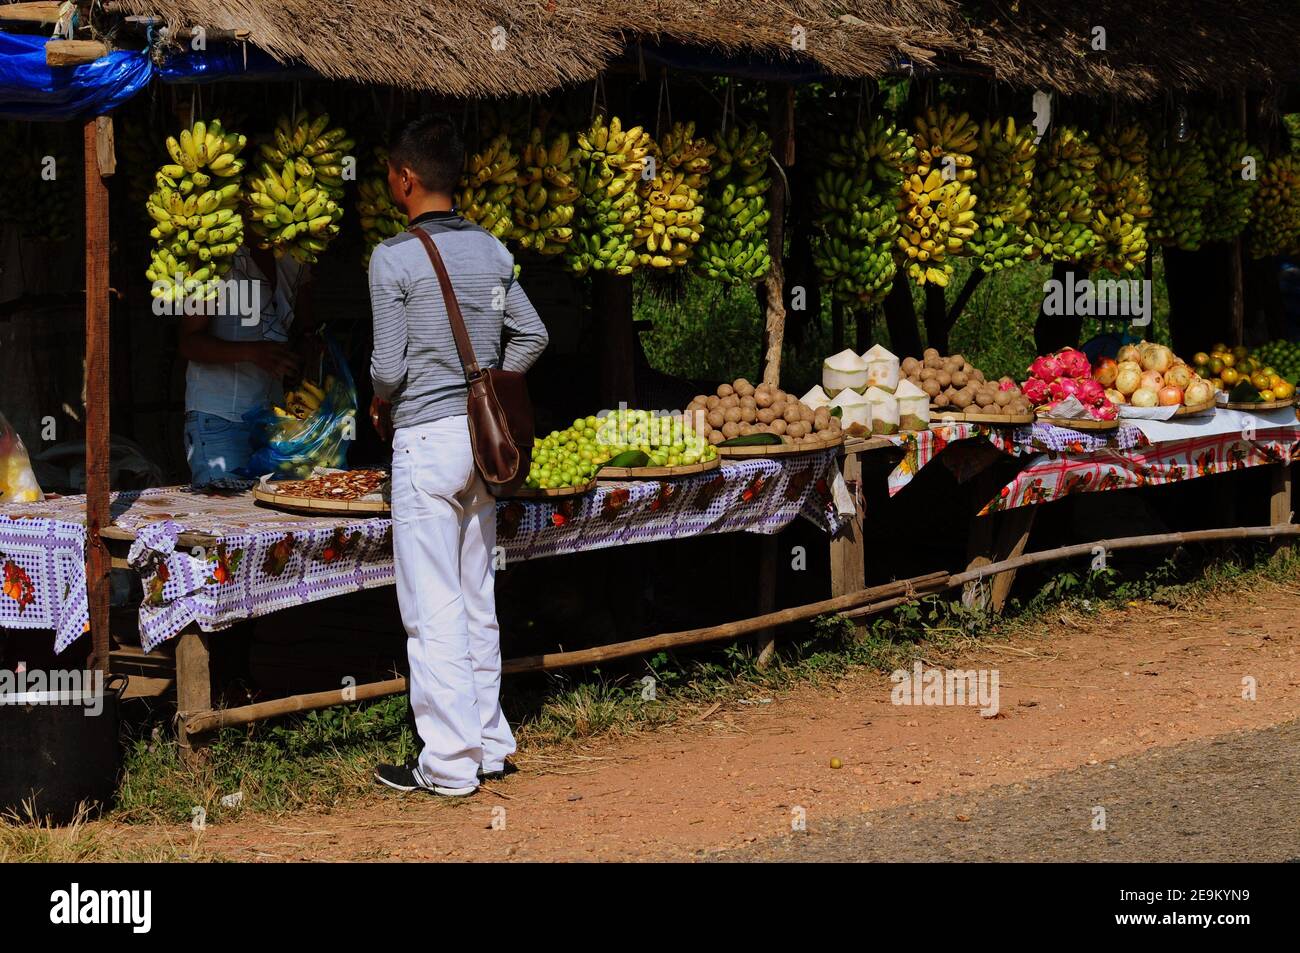 El turista compra frutas y verduras frescas en un puesto de mercado en Vieng Vang, Laos Foto de stock